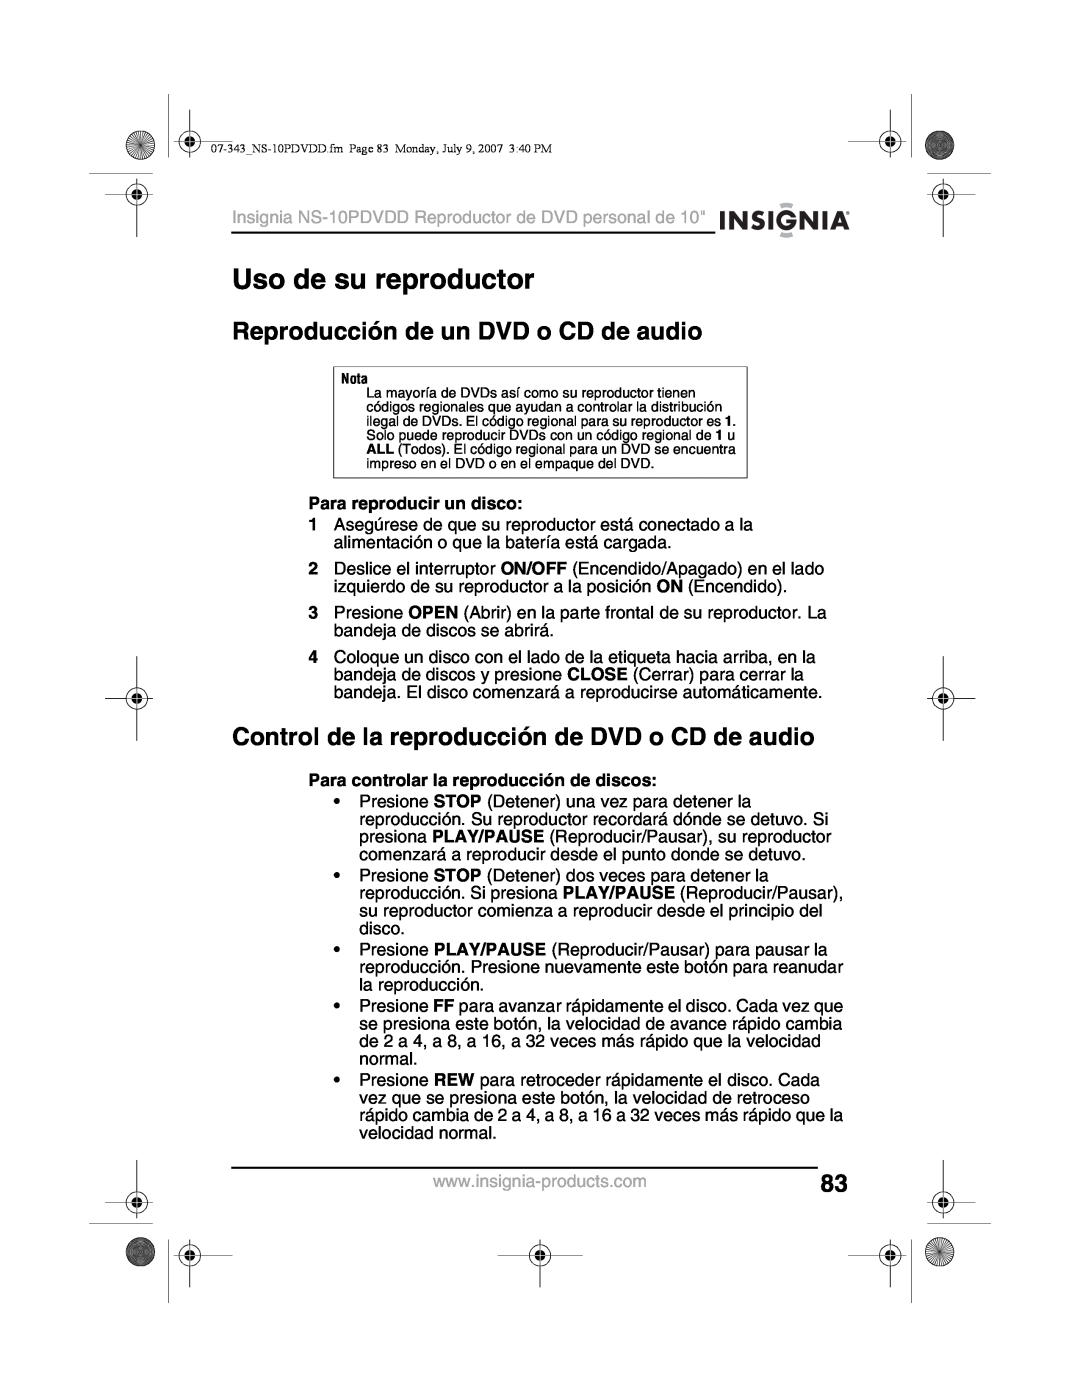 Insignia NS-10PDVDD manual Uso de su reproductor, Reproducción de un DVD o CD de audio, Para reproducir un disco 